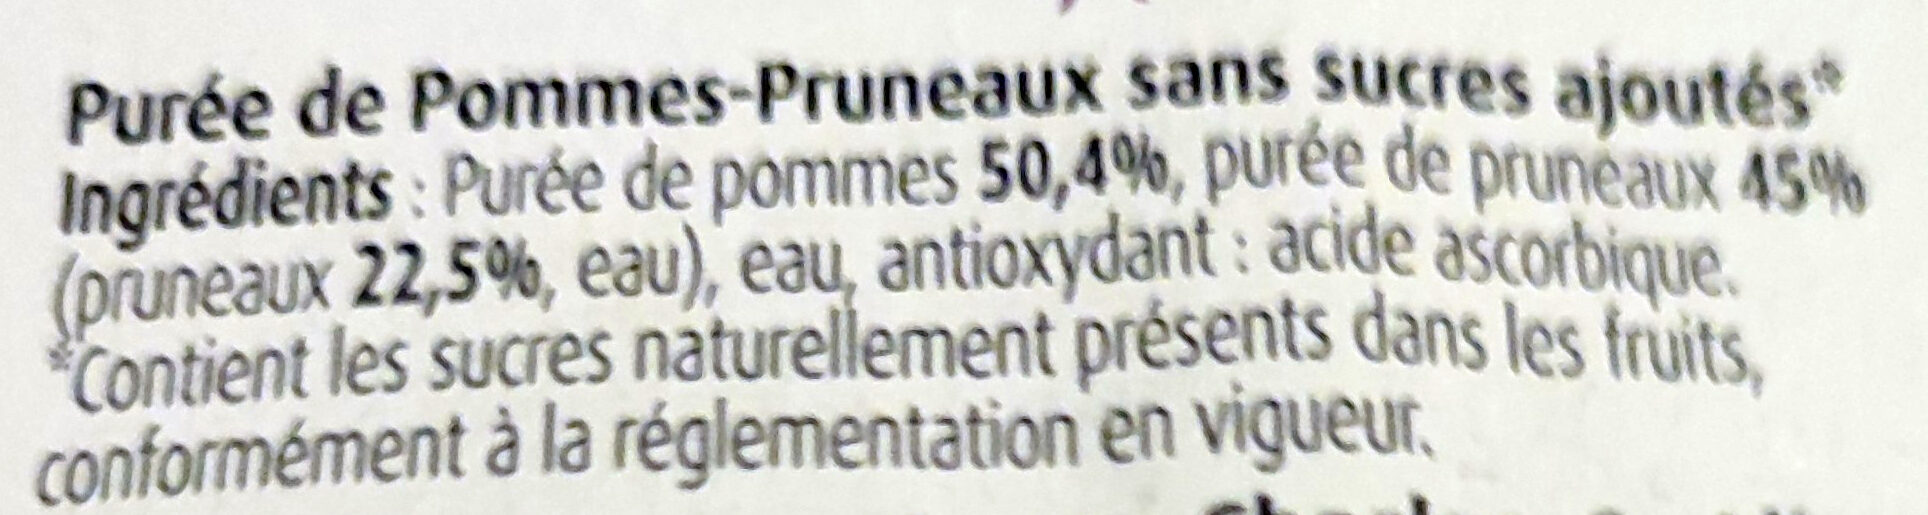 Pommes pruneaux - Ingredients - fr